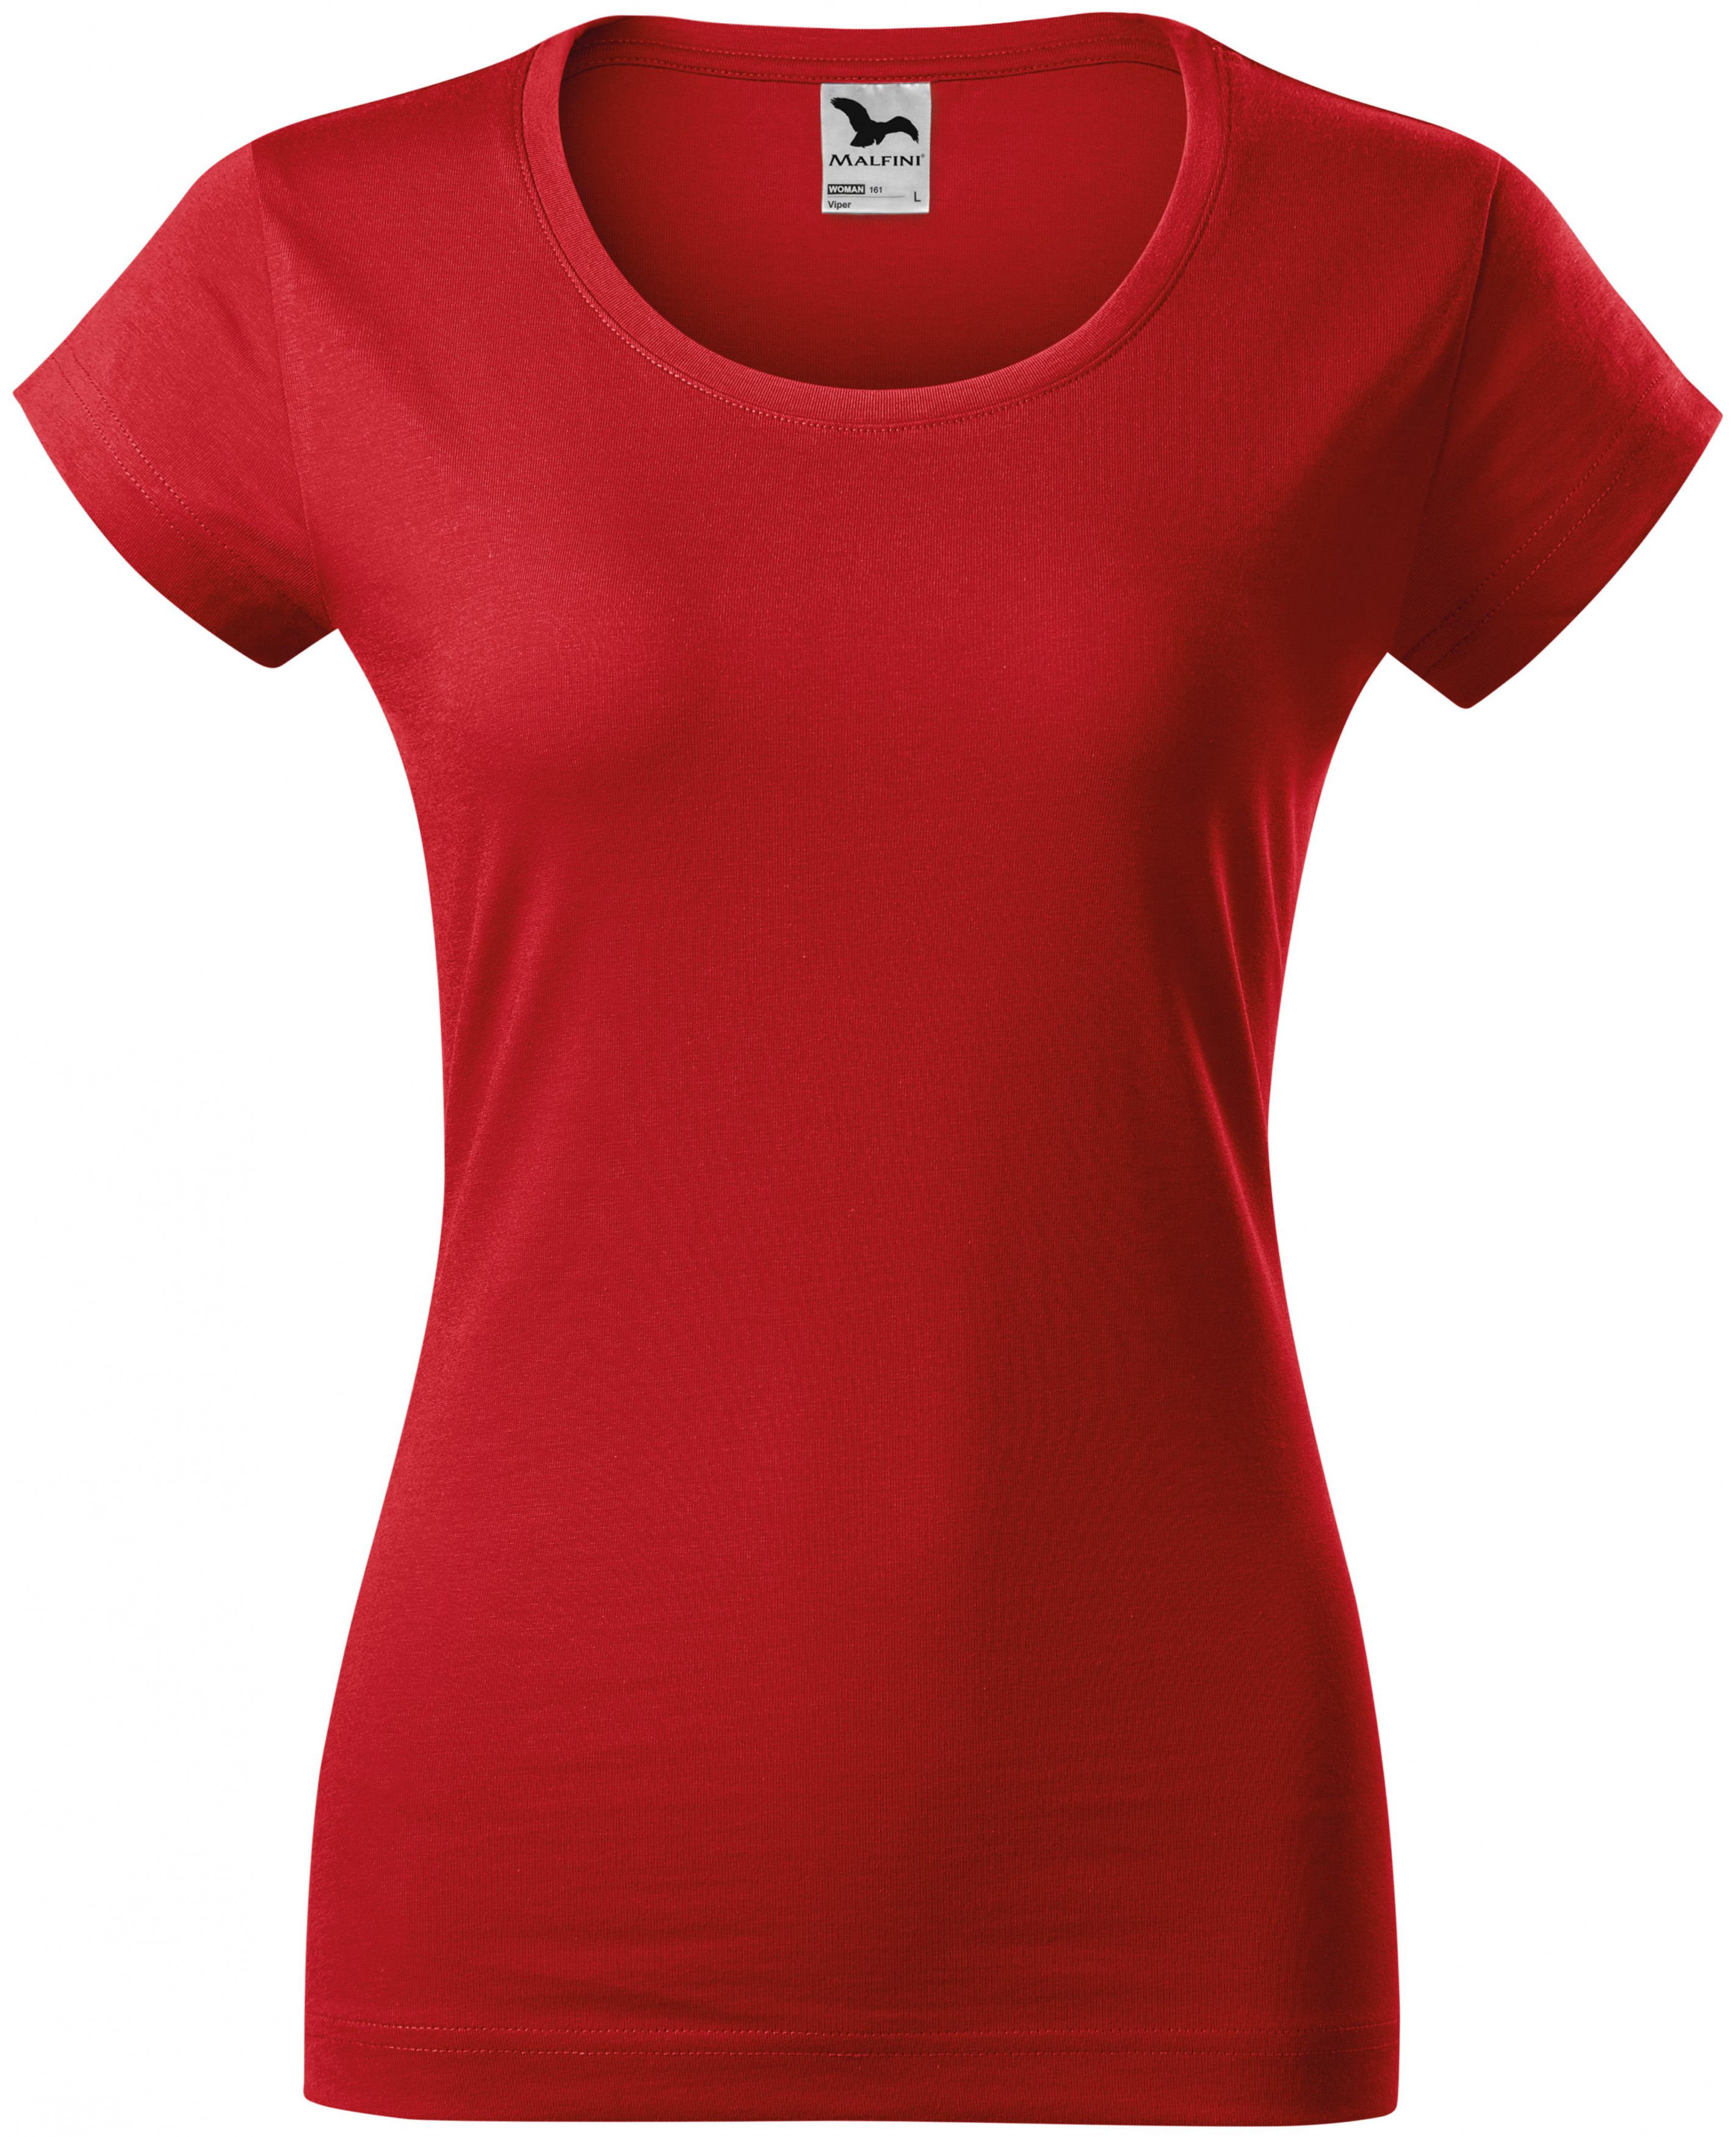 Dámske tričko zúžené s okrúhlym výstrihom, červená, XL